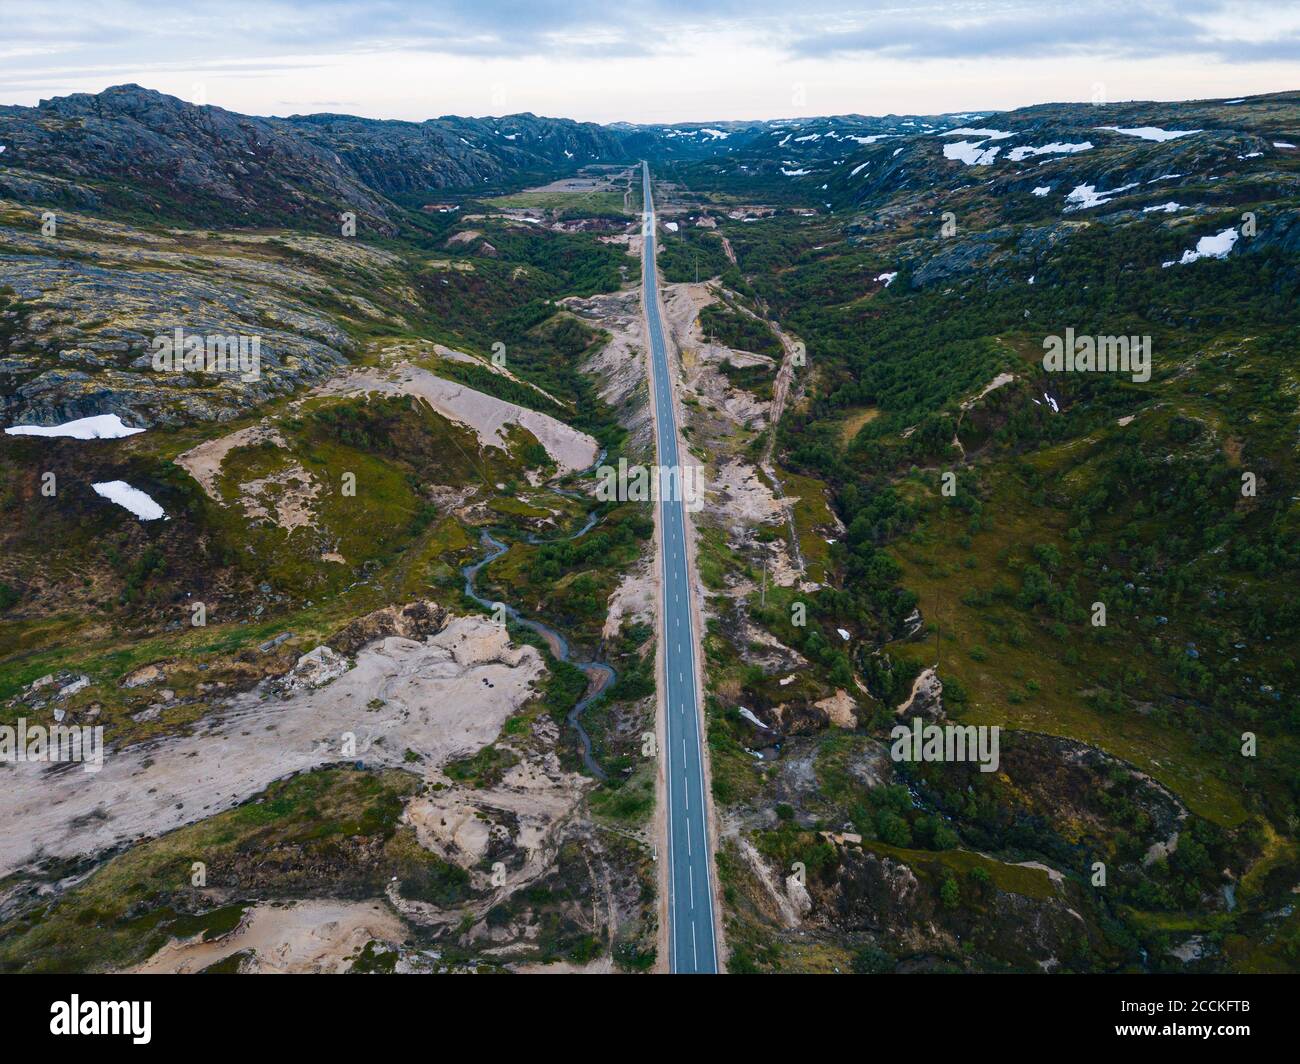 Russia, Oblast di Murmansk, Teriberka, veduta aerea della strada asfaltata diritta attraverso il paesaggio montuoso Foto Stock